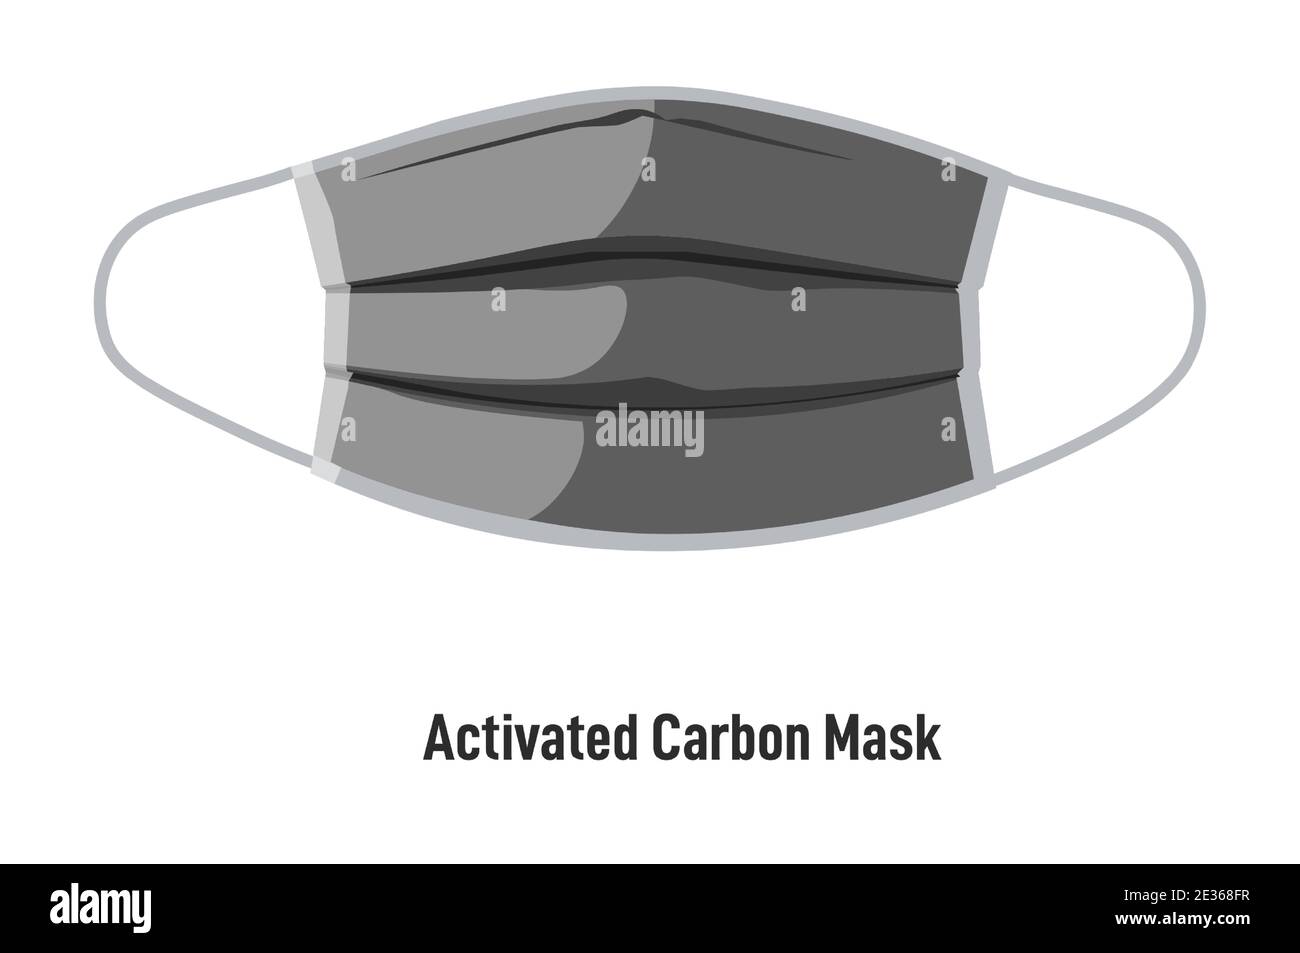 Masque à charbon actif, revêtement du visage pendant le covid Illustration de Vecteur